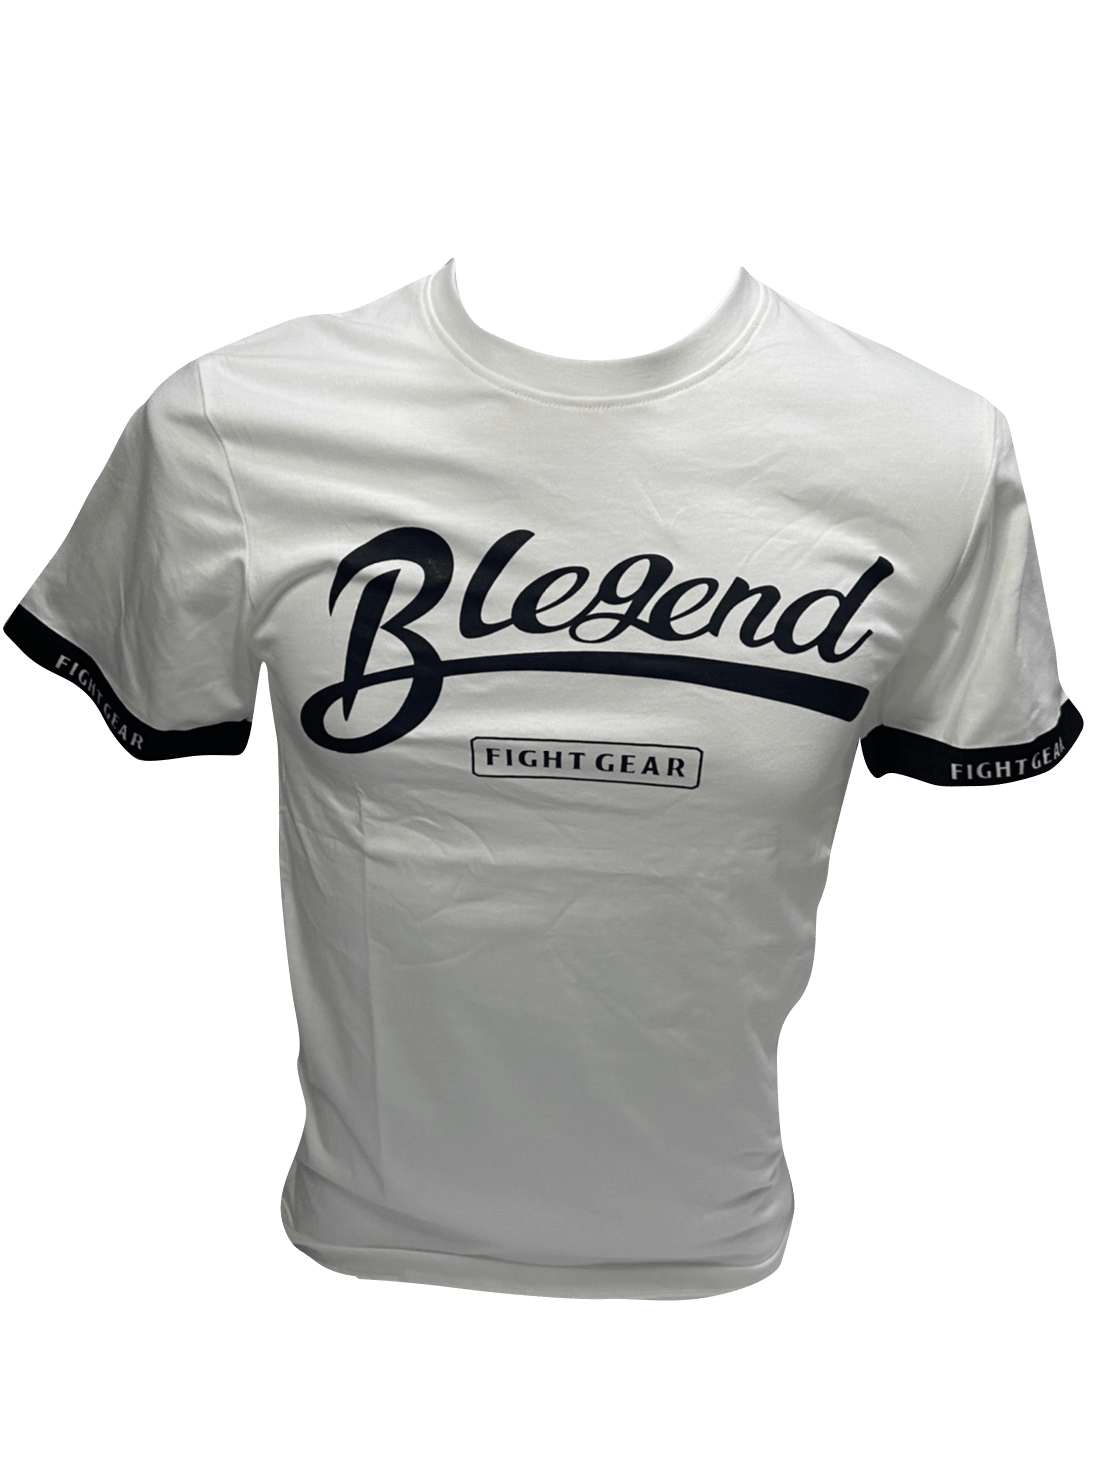 Blegend T-shirt Apo cotton